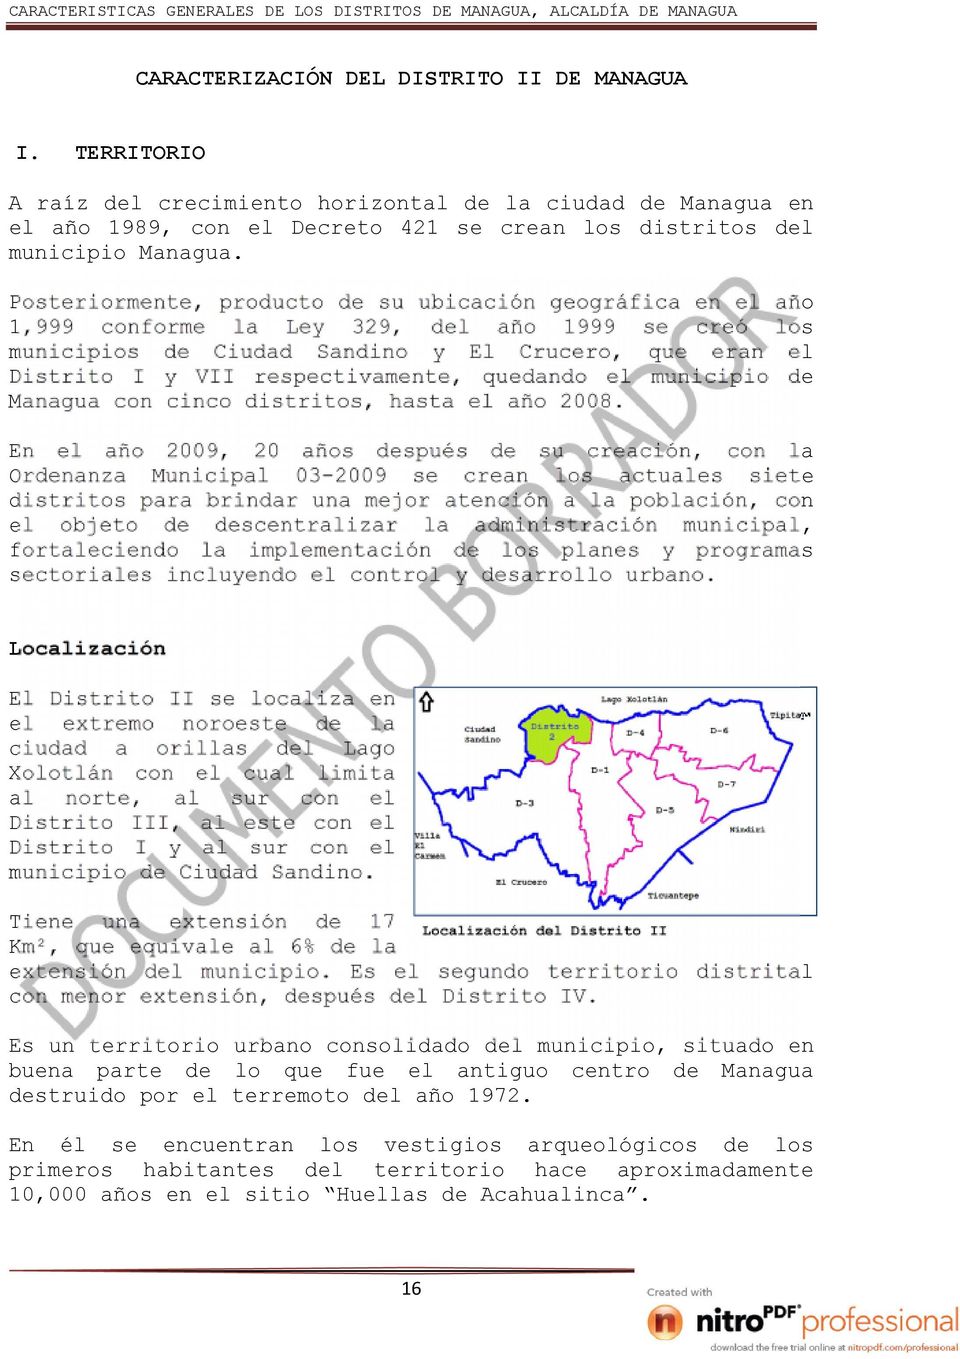 quedando el municipio Managua con cinco distritos, hasta el año 2008.